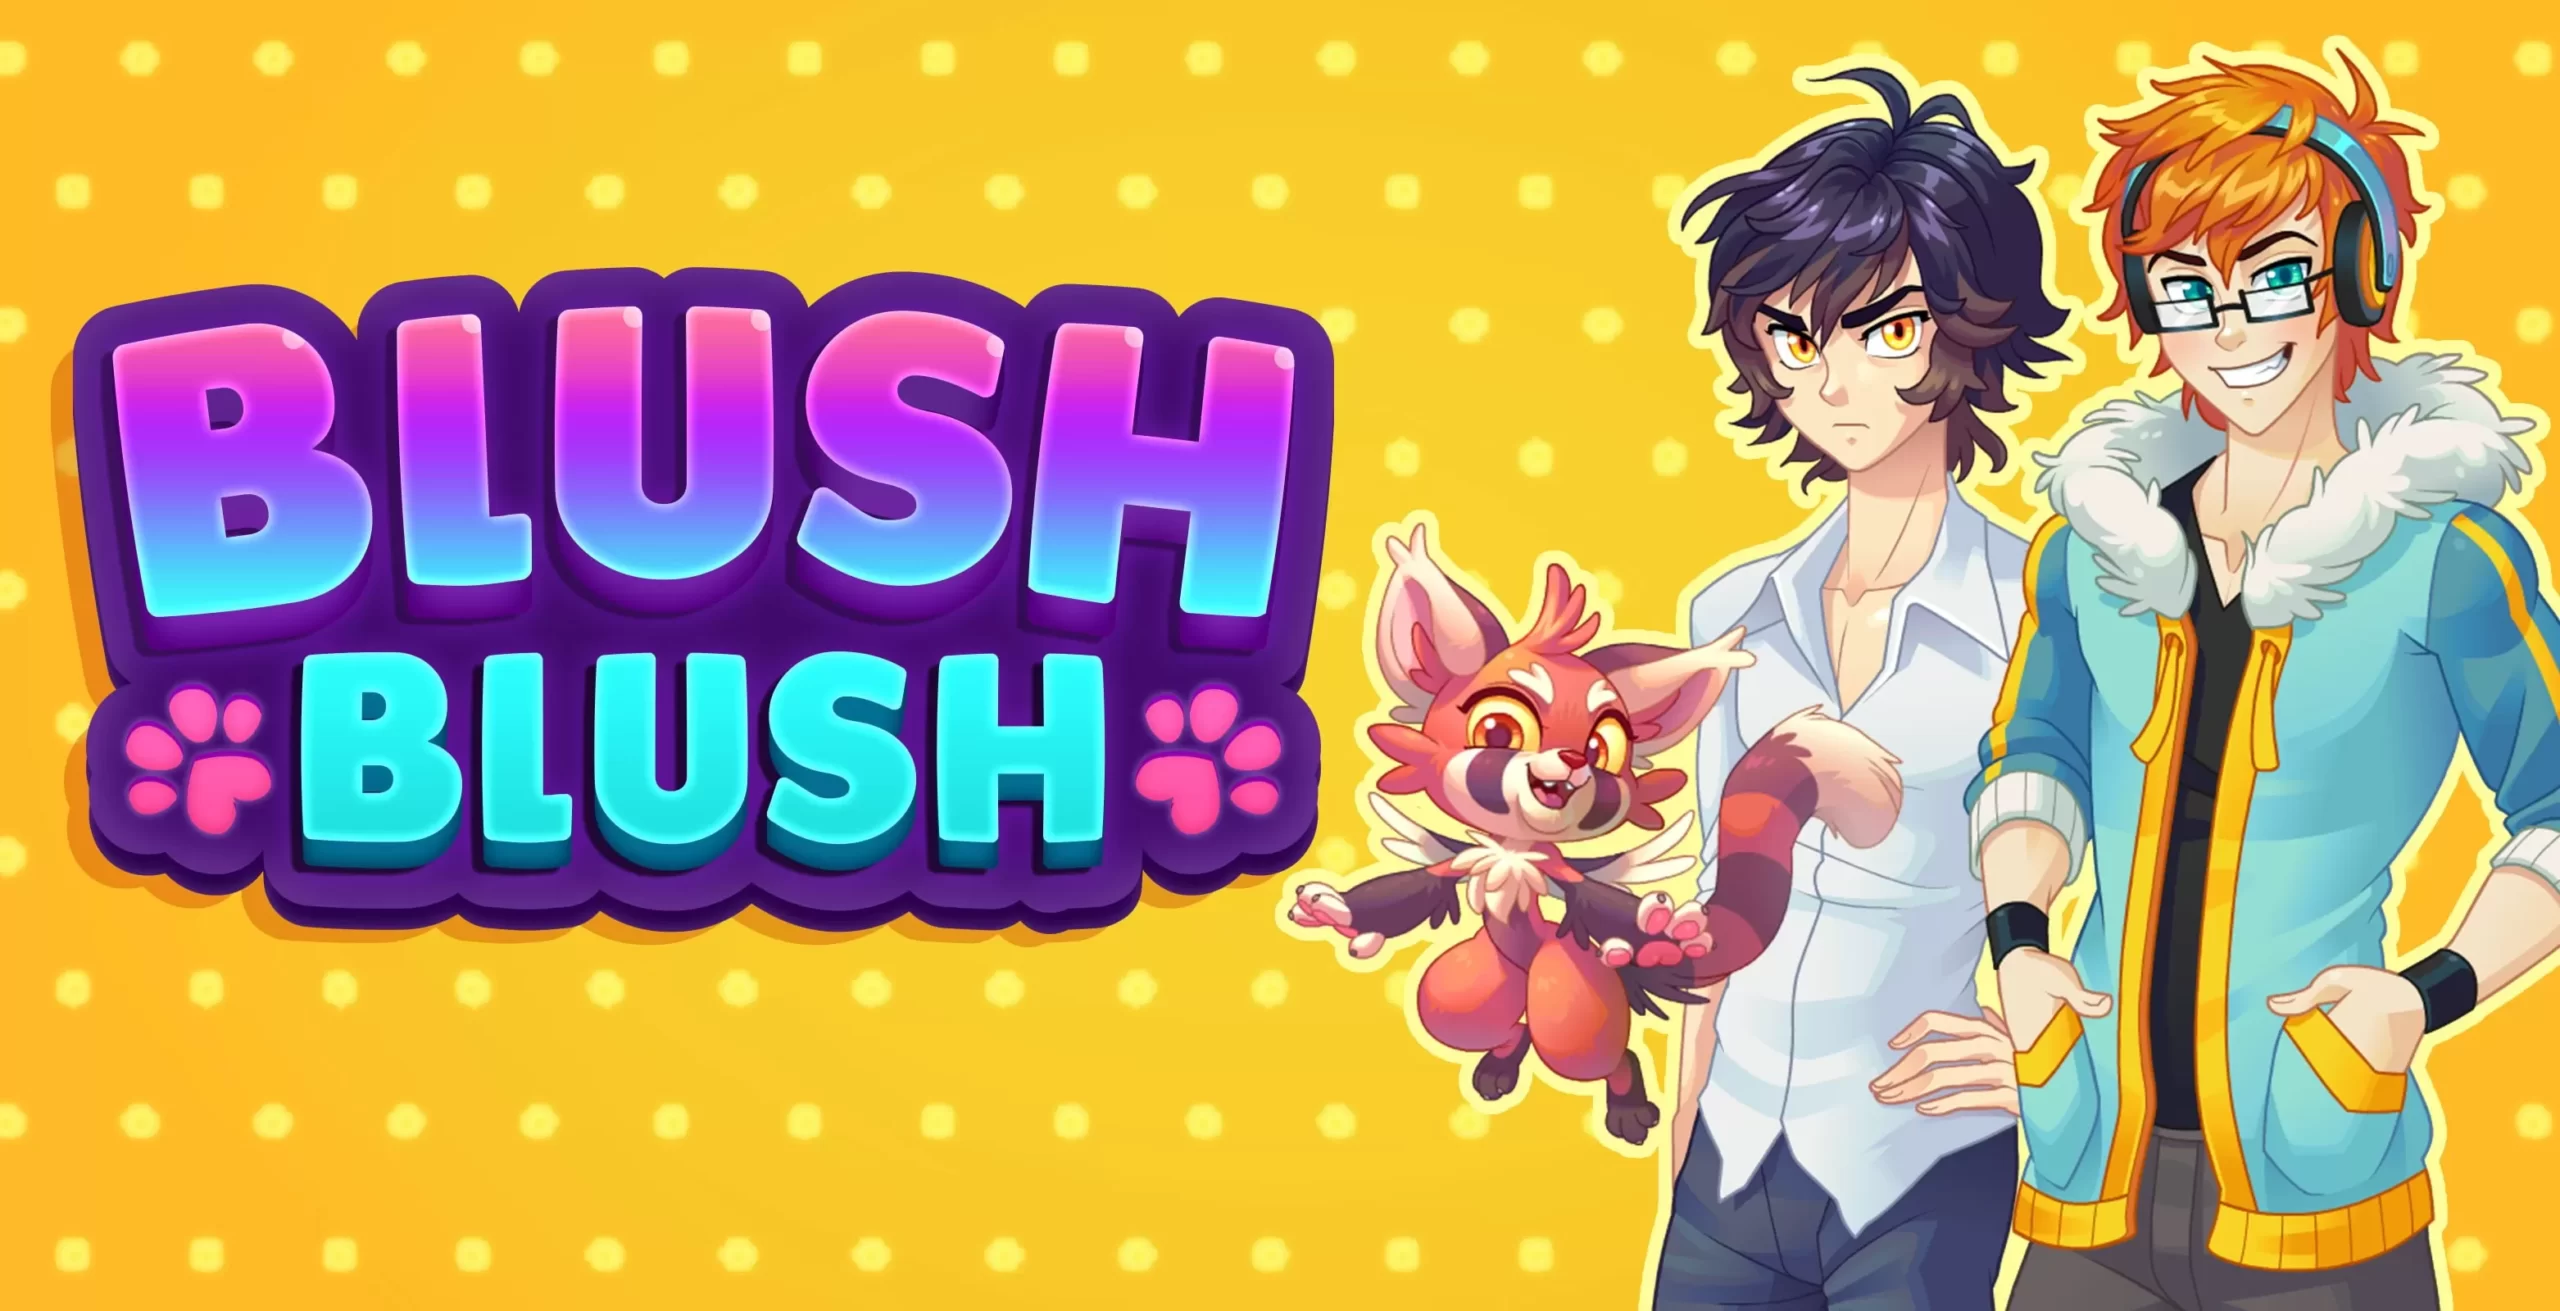 Blush Blush - играть бесплатно онлайн. Обзор. Айдл игры